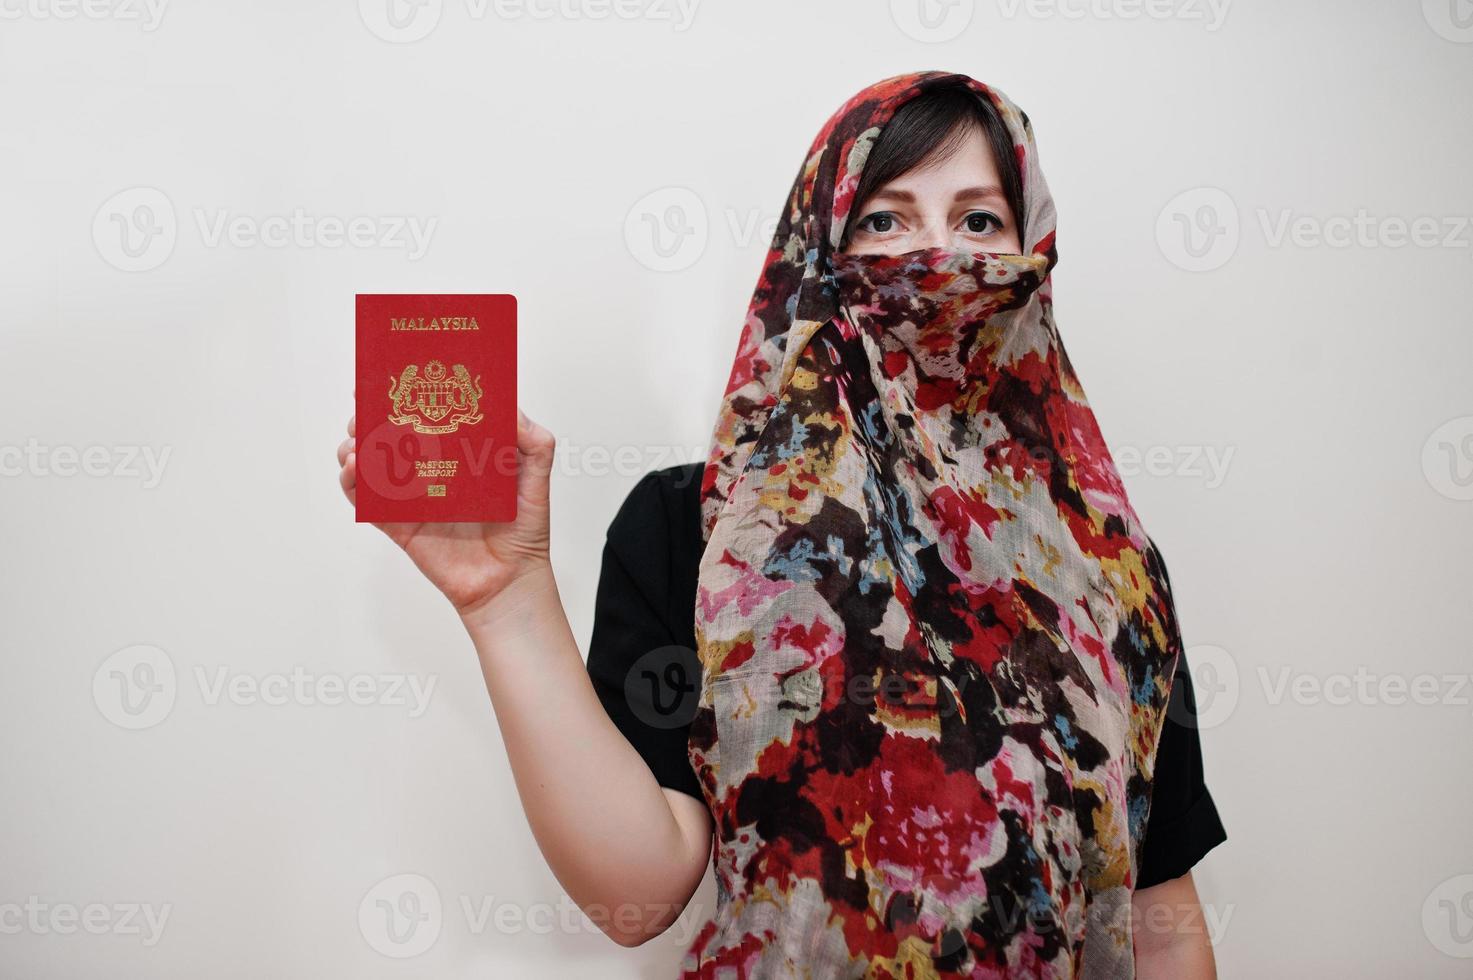 jovem muçulmana árabe em roupas hijab segura passaporte da malásia no fundo da parede branca, retrato de estúdio. foto